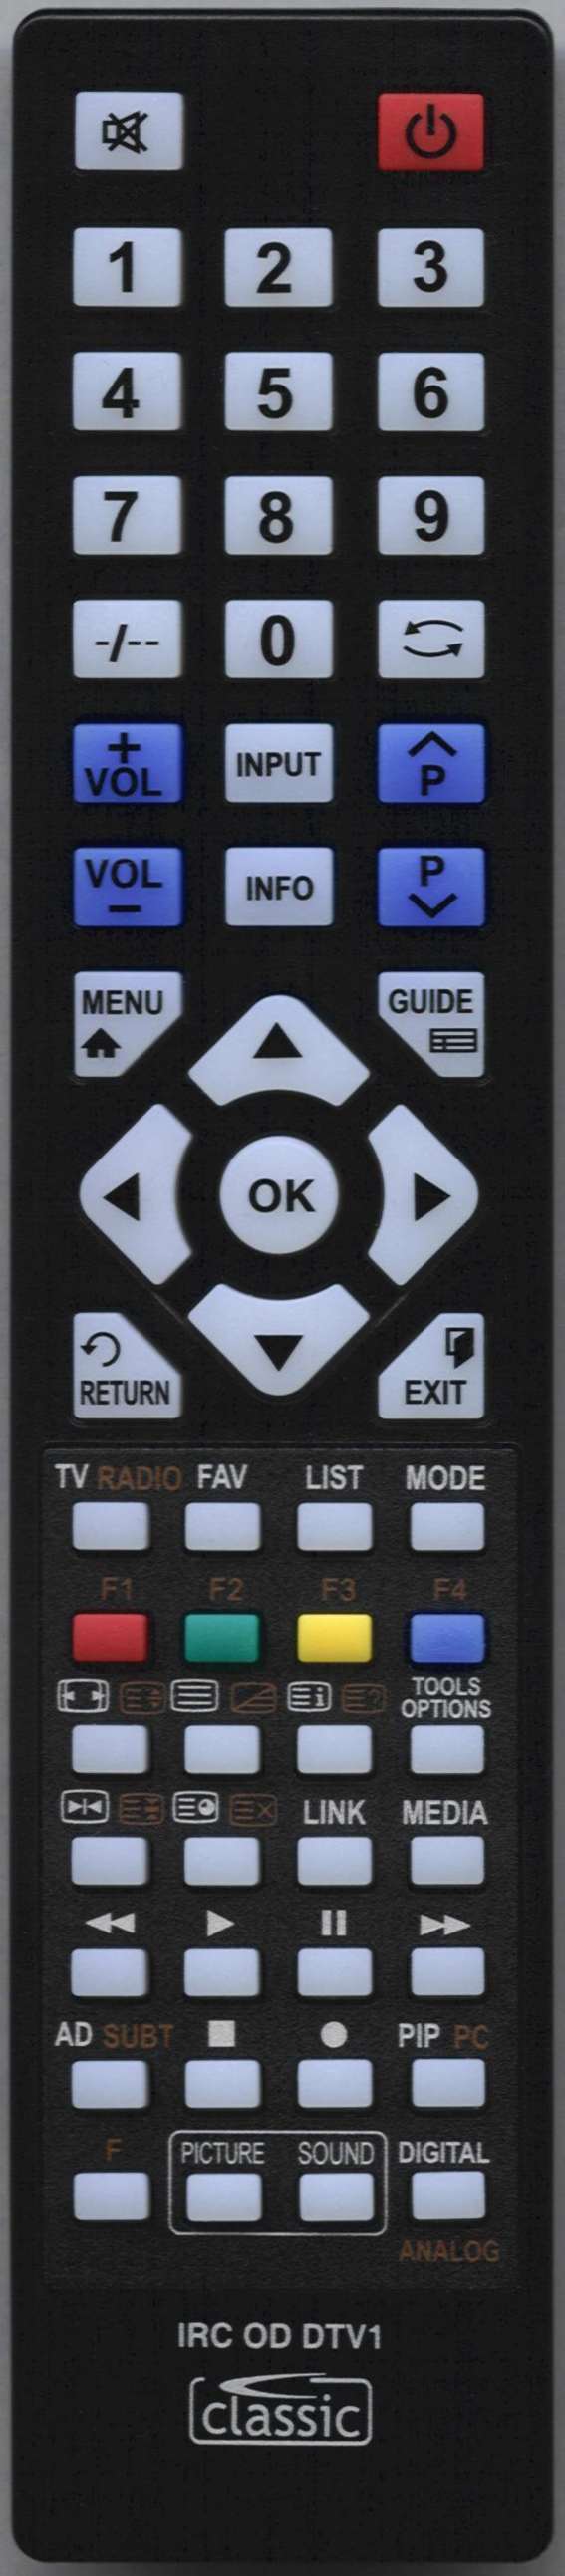 LUXOR 10053026 Remote Control Alternative